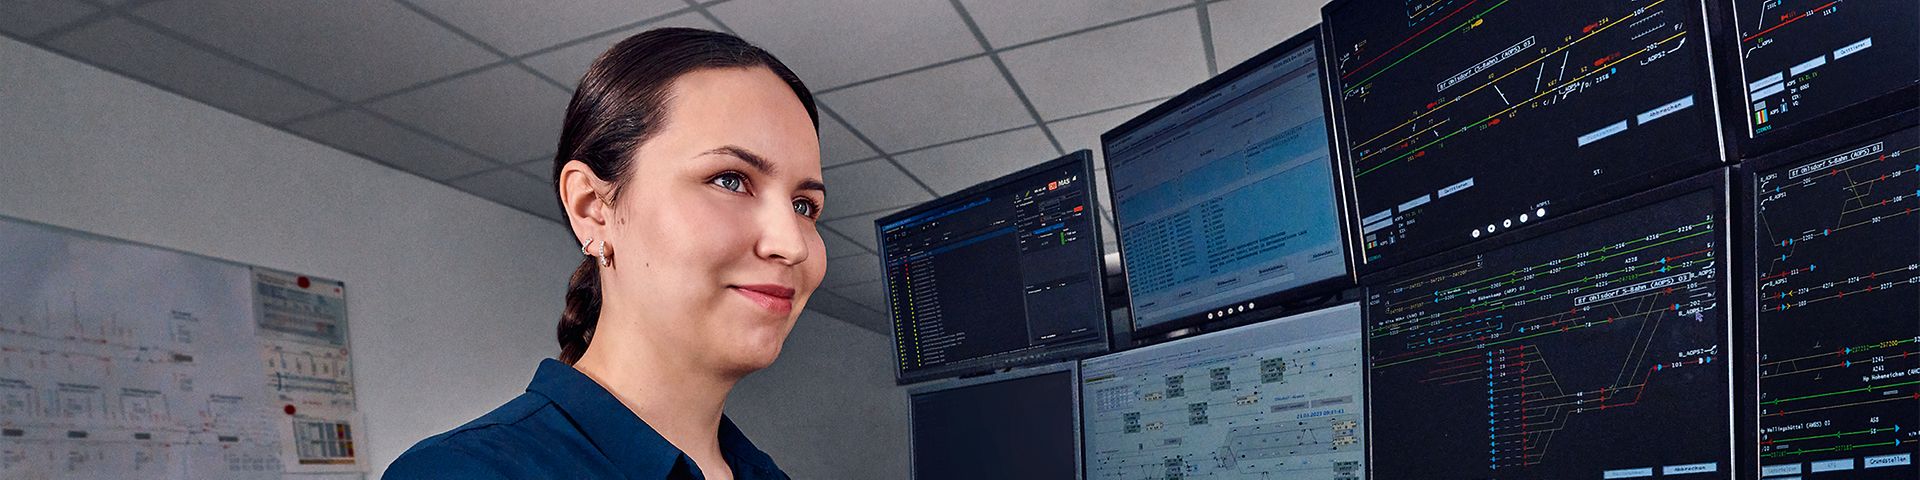 Eine Fahrdienstleiterin arbeitet an acht Bildschirmen des Elektronischen Stellwerks